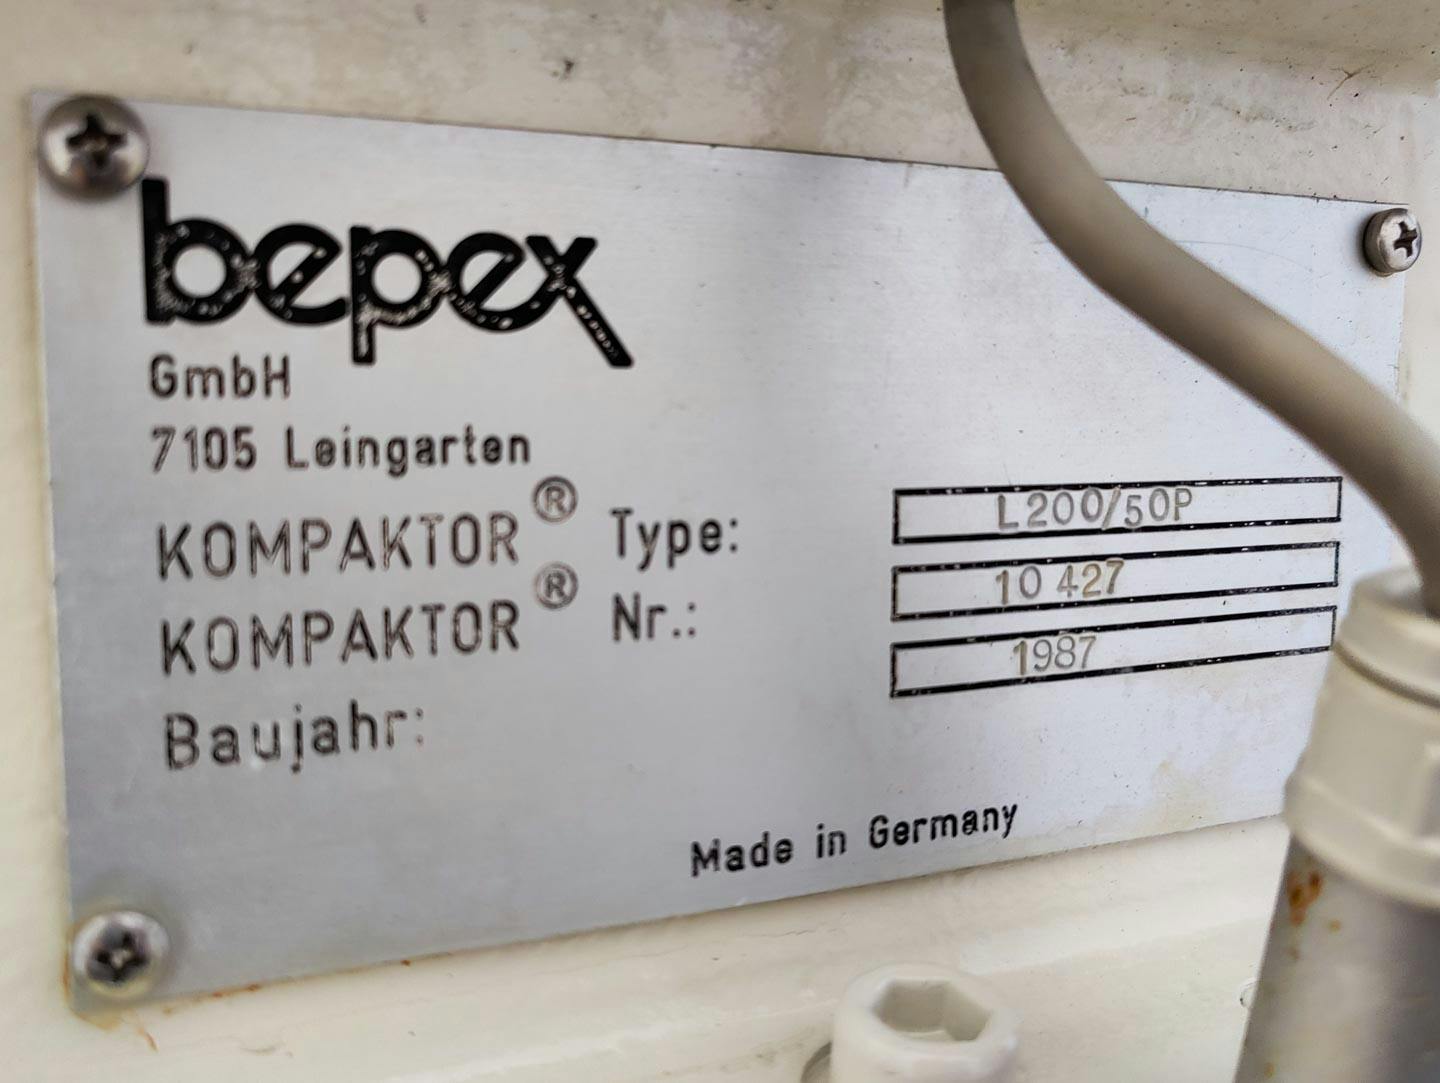 Bepex L-200/50P - Вальцовый пресс - image 14